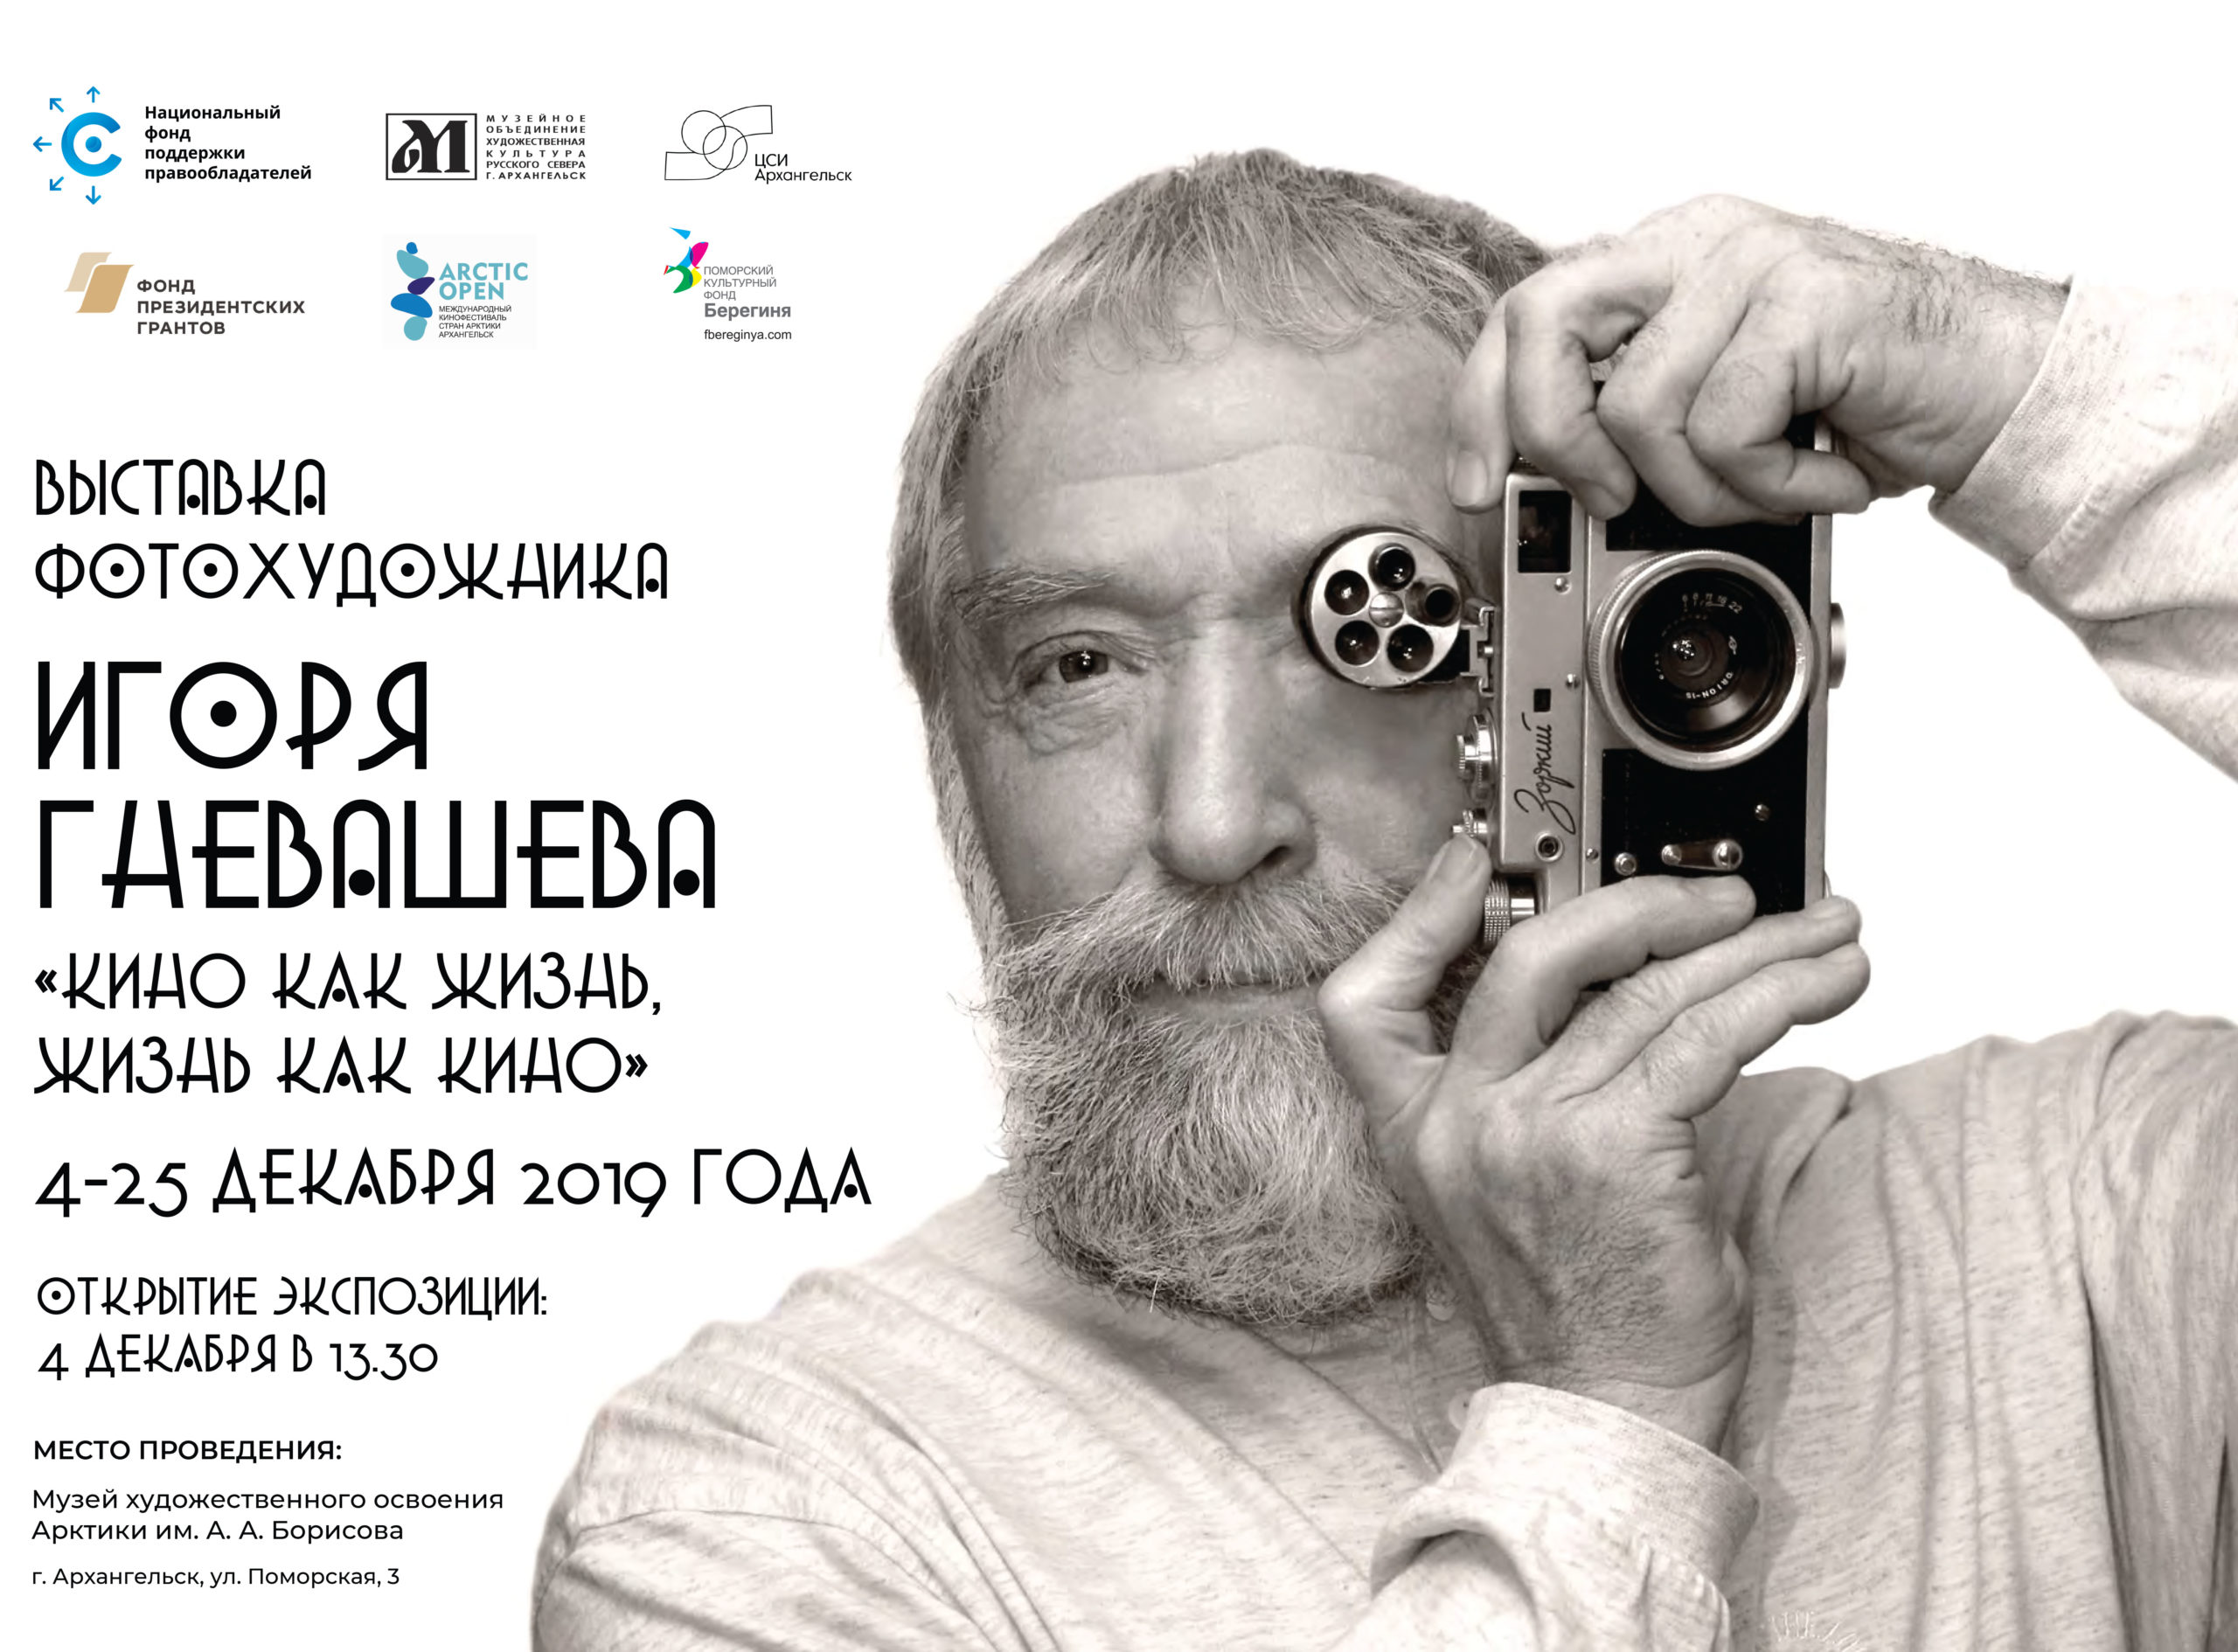 НФПП покажет фотовыставку Игоря Гневашева на кинофестивале Arctic open в Архангельске